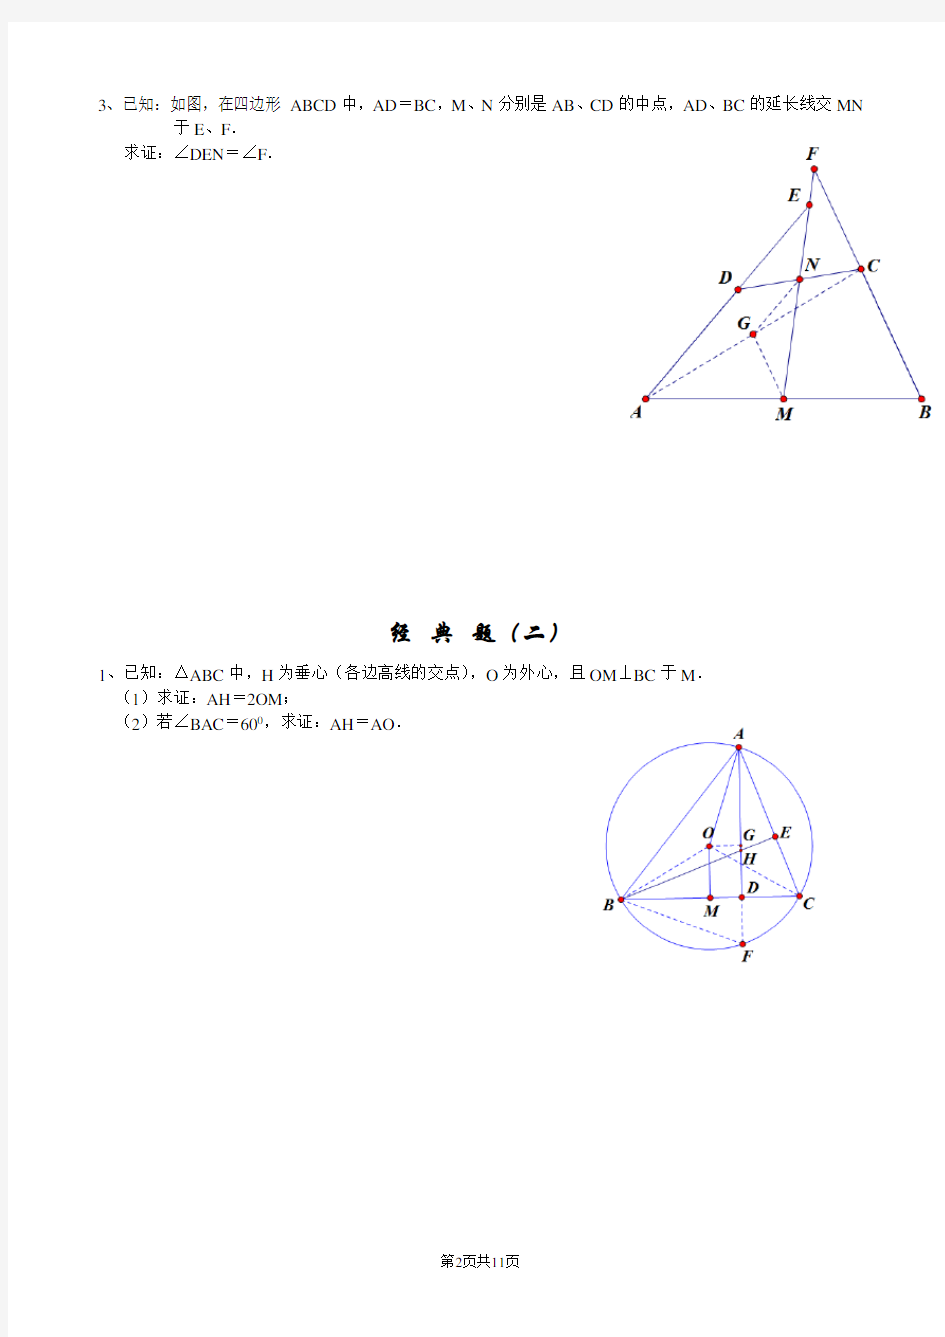 初三经典几何证明练习题(含答案)